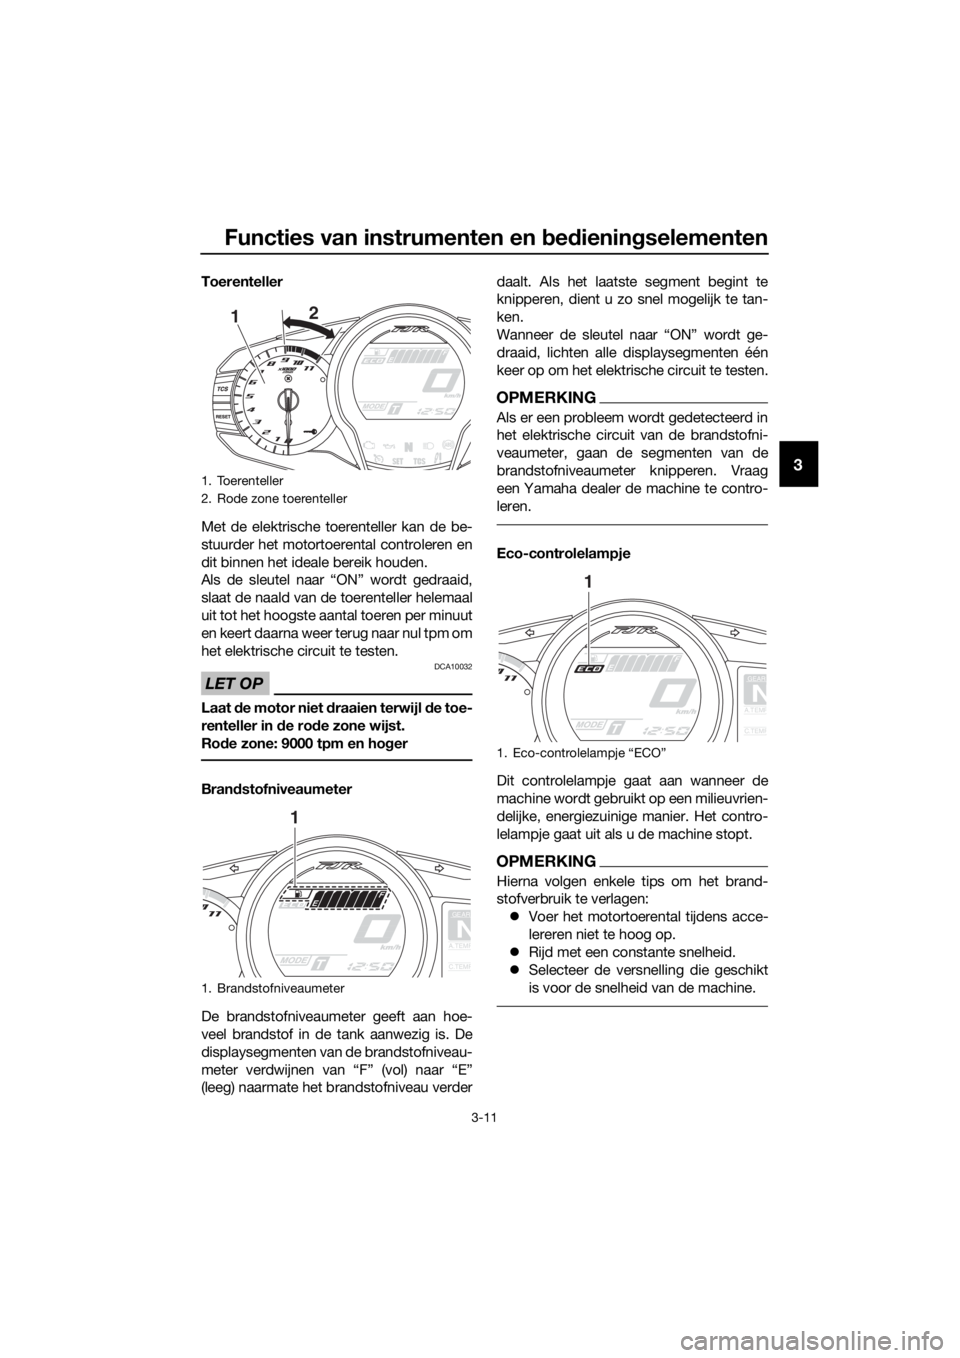 YAMAHA FJR1300AE 2016  Instructieboekje (in Dutch) Functies van instrumenten en bed ienin gselementen
3-11
3
Toerenteller
Met de elektrische toerenteller kan de be-
stuurder het motortoerental controleren en
dit binnen het ideale bereik houden.
Als de